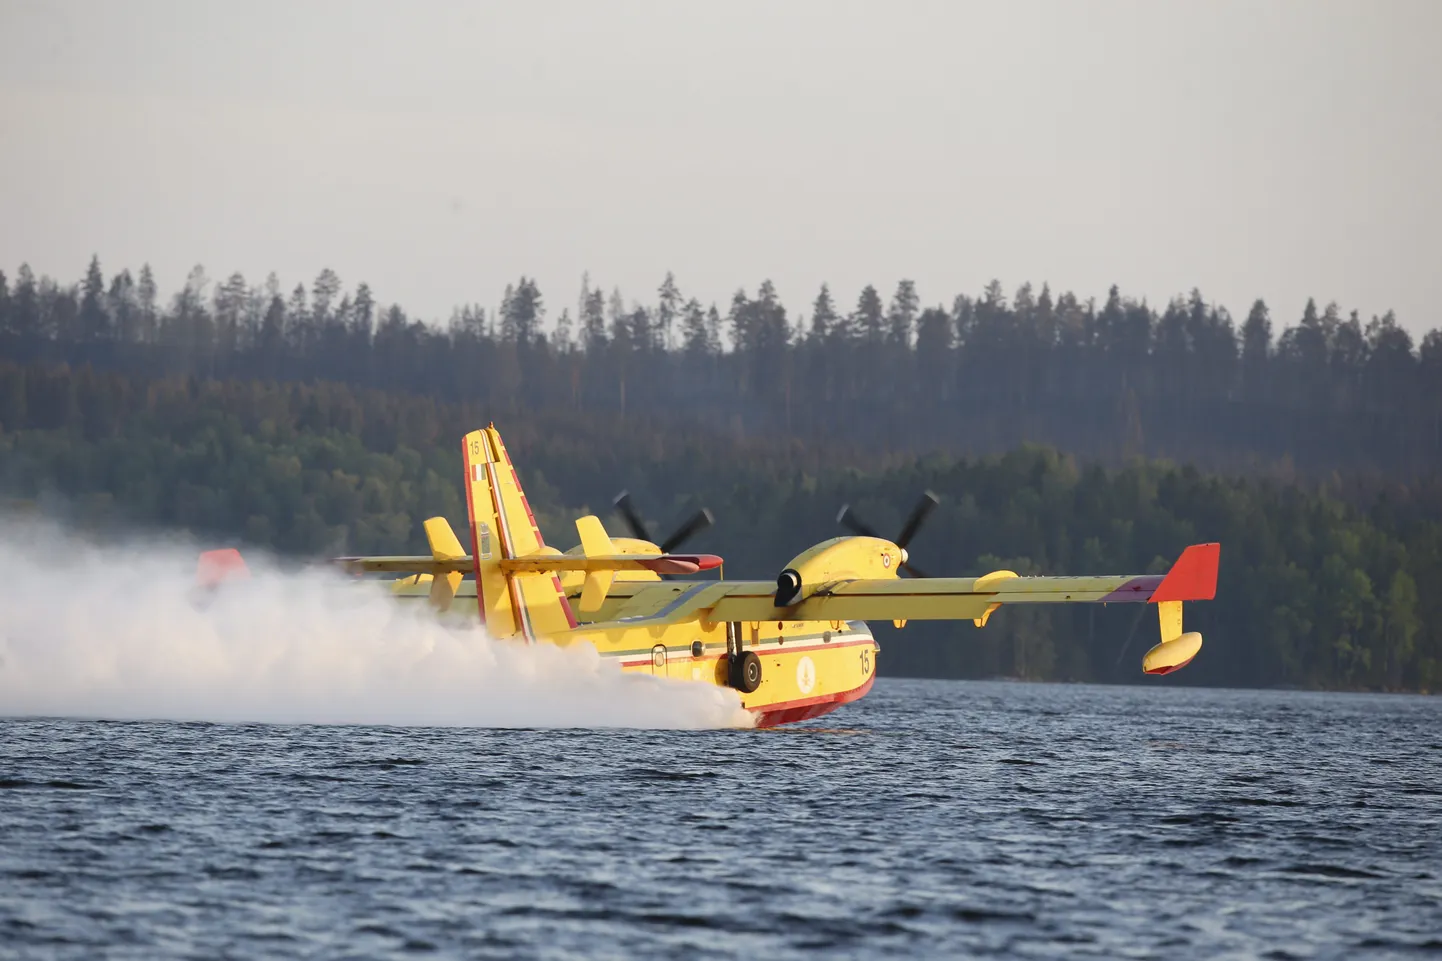 Itaalia tuletõrjelennuk võtab Horende järvest vett, et kustutada Rootsi metsapõlengut.